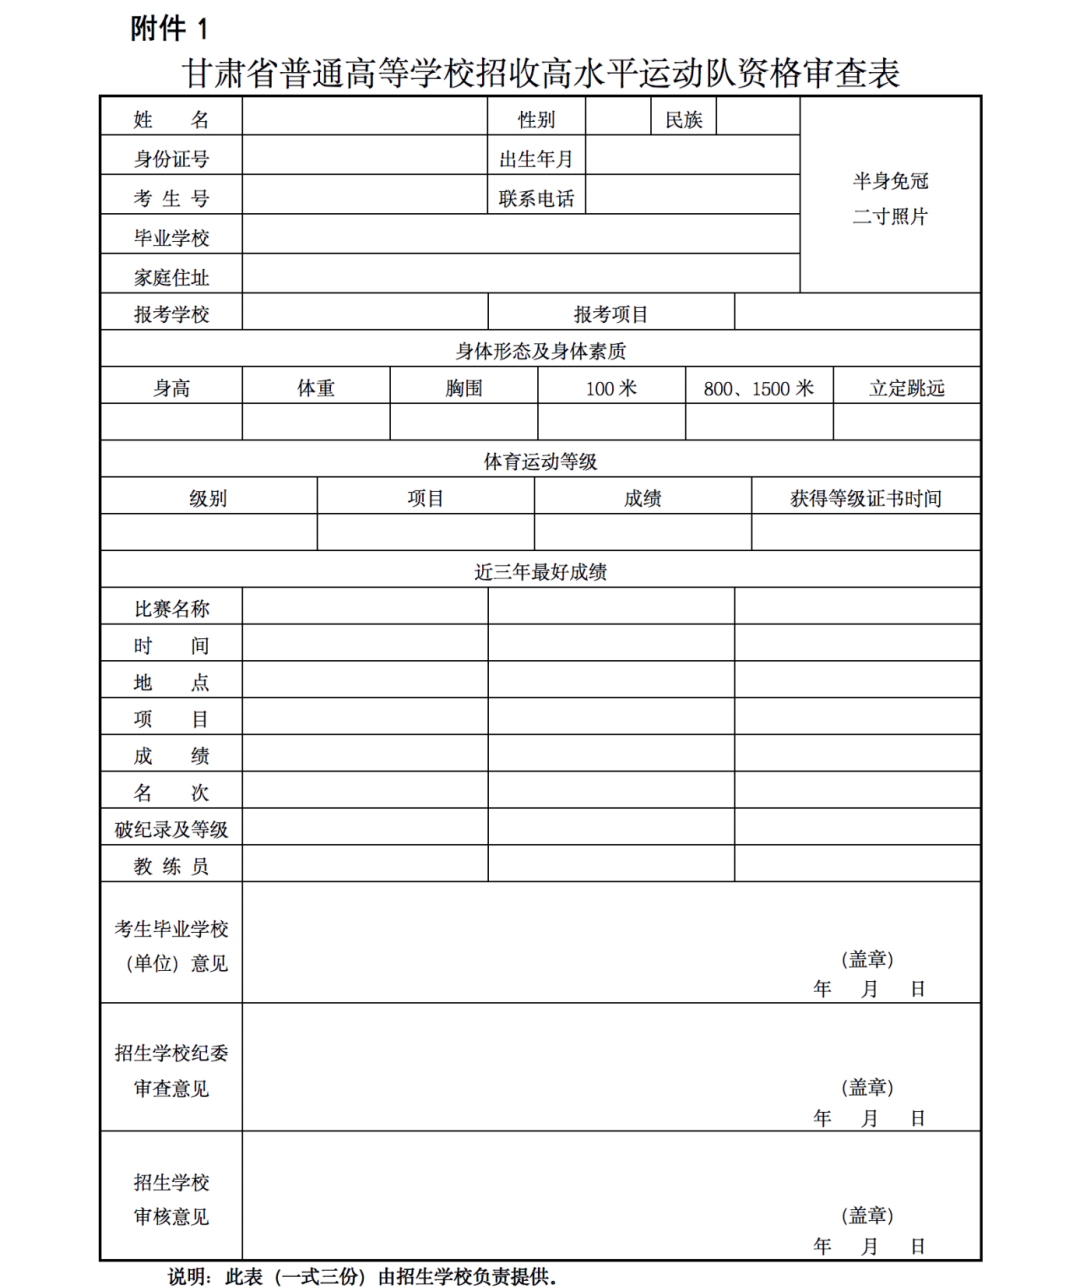 2023甘肃普通高等学校招收高水平运动队工作的通知